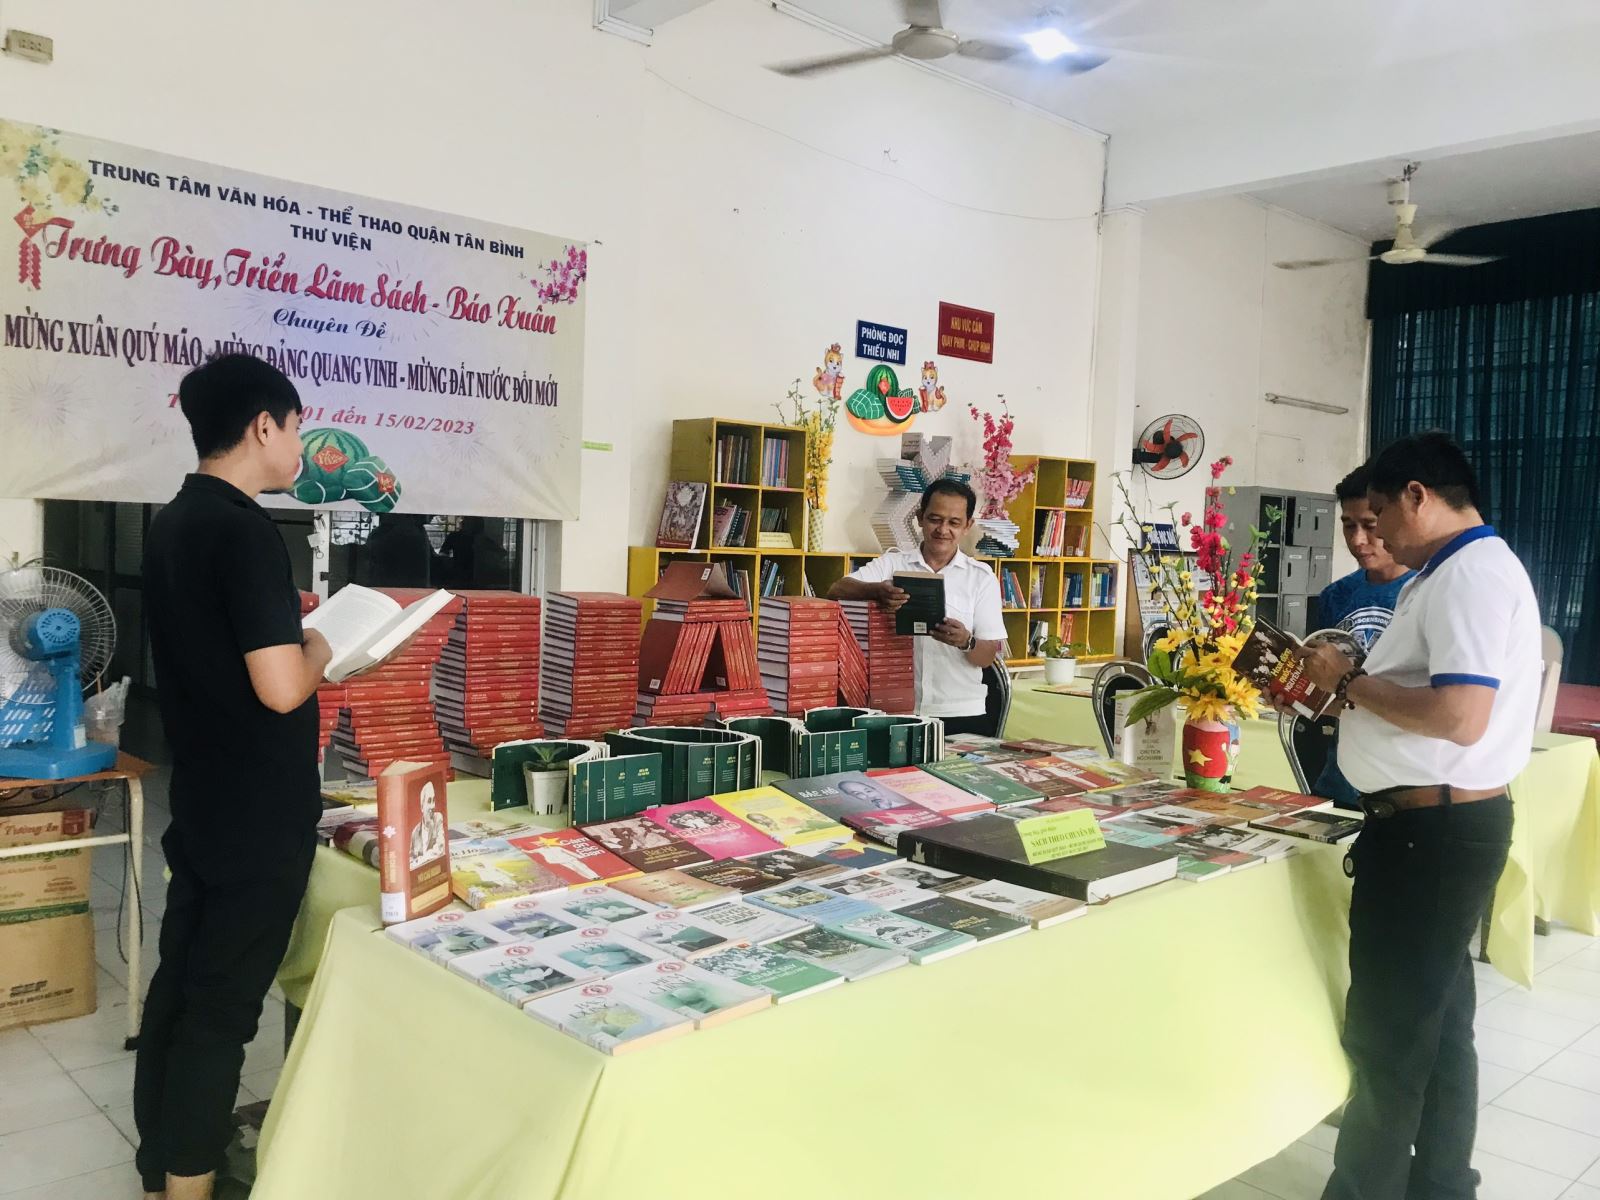 Thư viện quận Tân Bình: Tổ chức luân chuyển Sách - Báo Xuân trưng bày, triển lãm phục vụ tại cơ sở chủ đề: “Mừng Xuân Quý Mão - Mừng Đảng Quang Vinh``